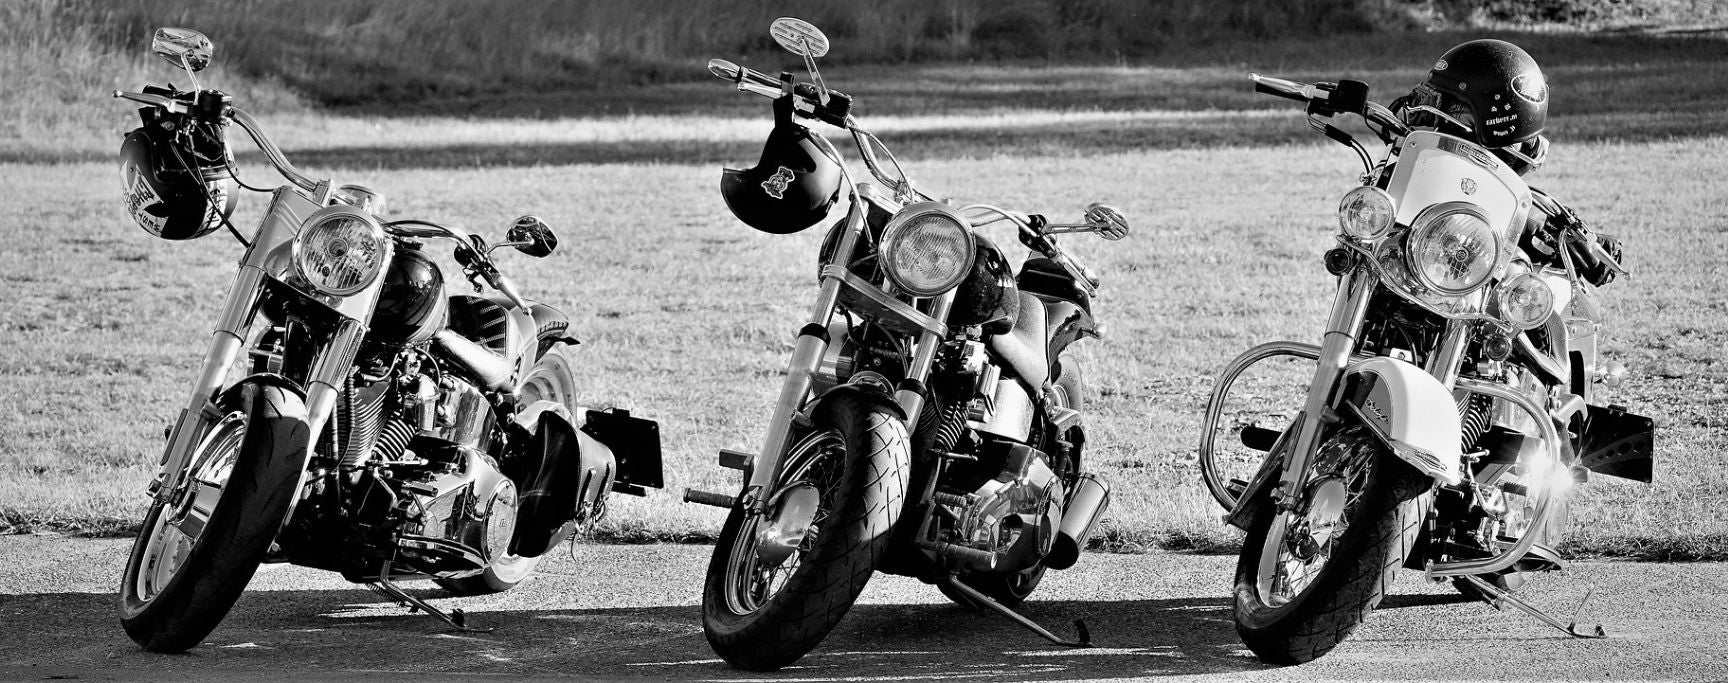 biker moto